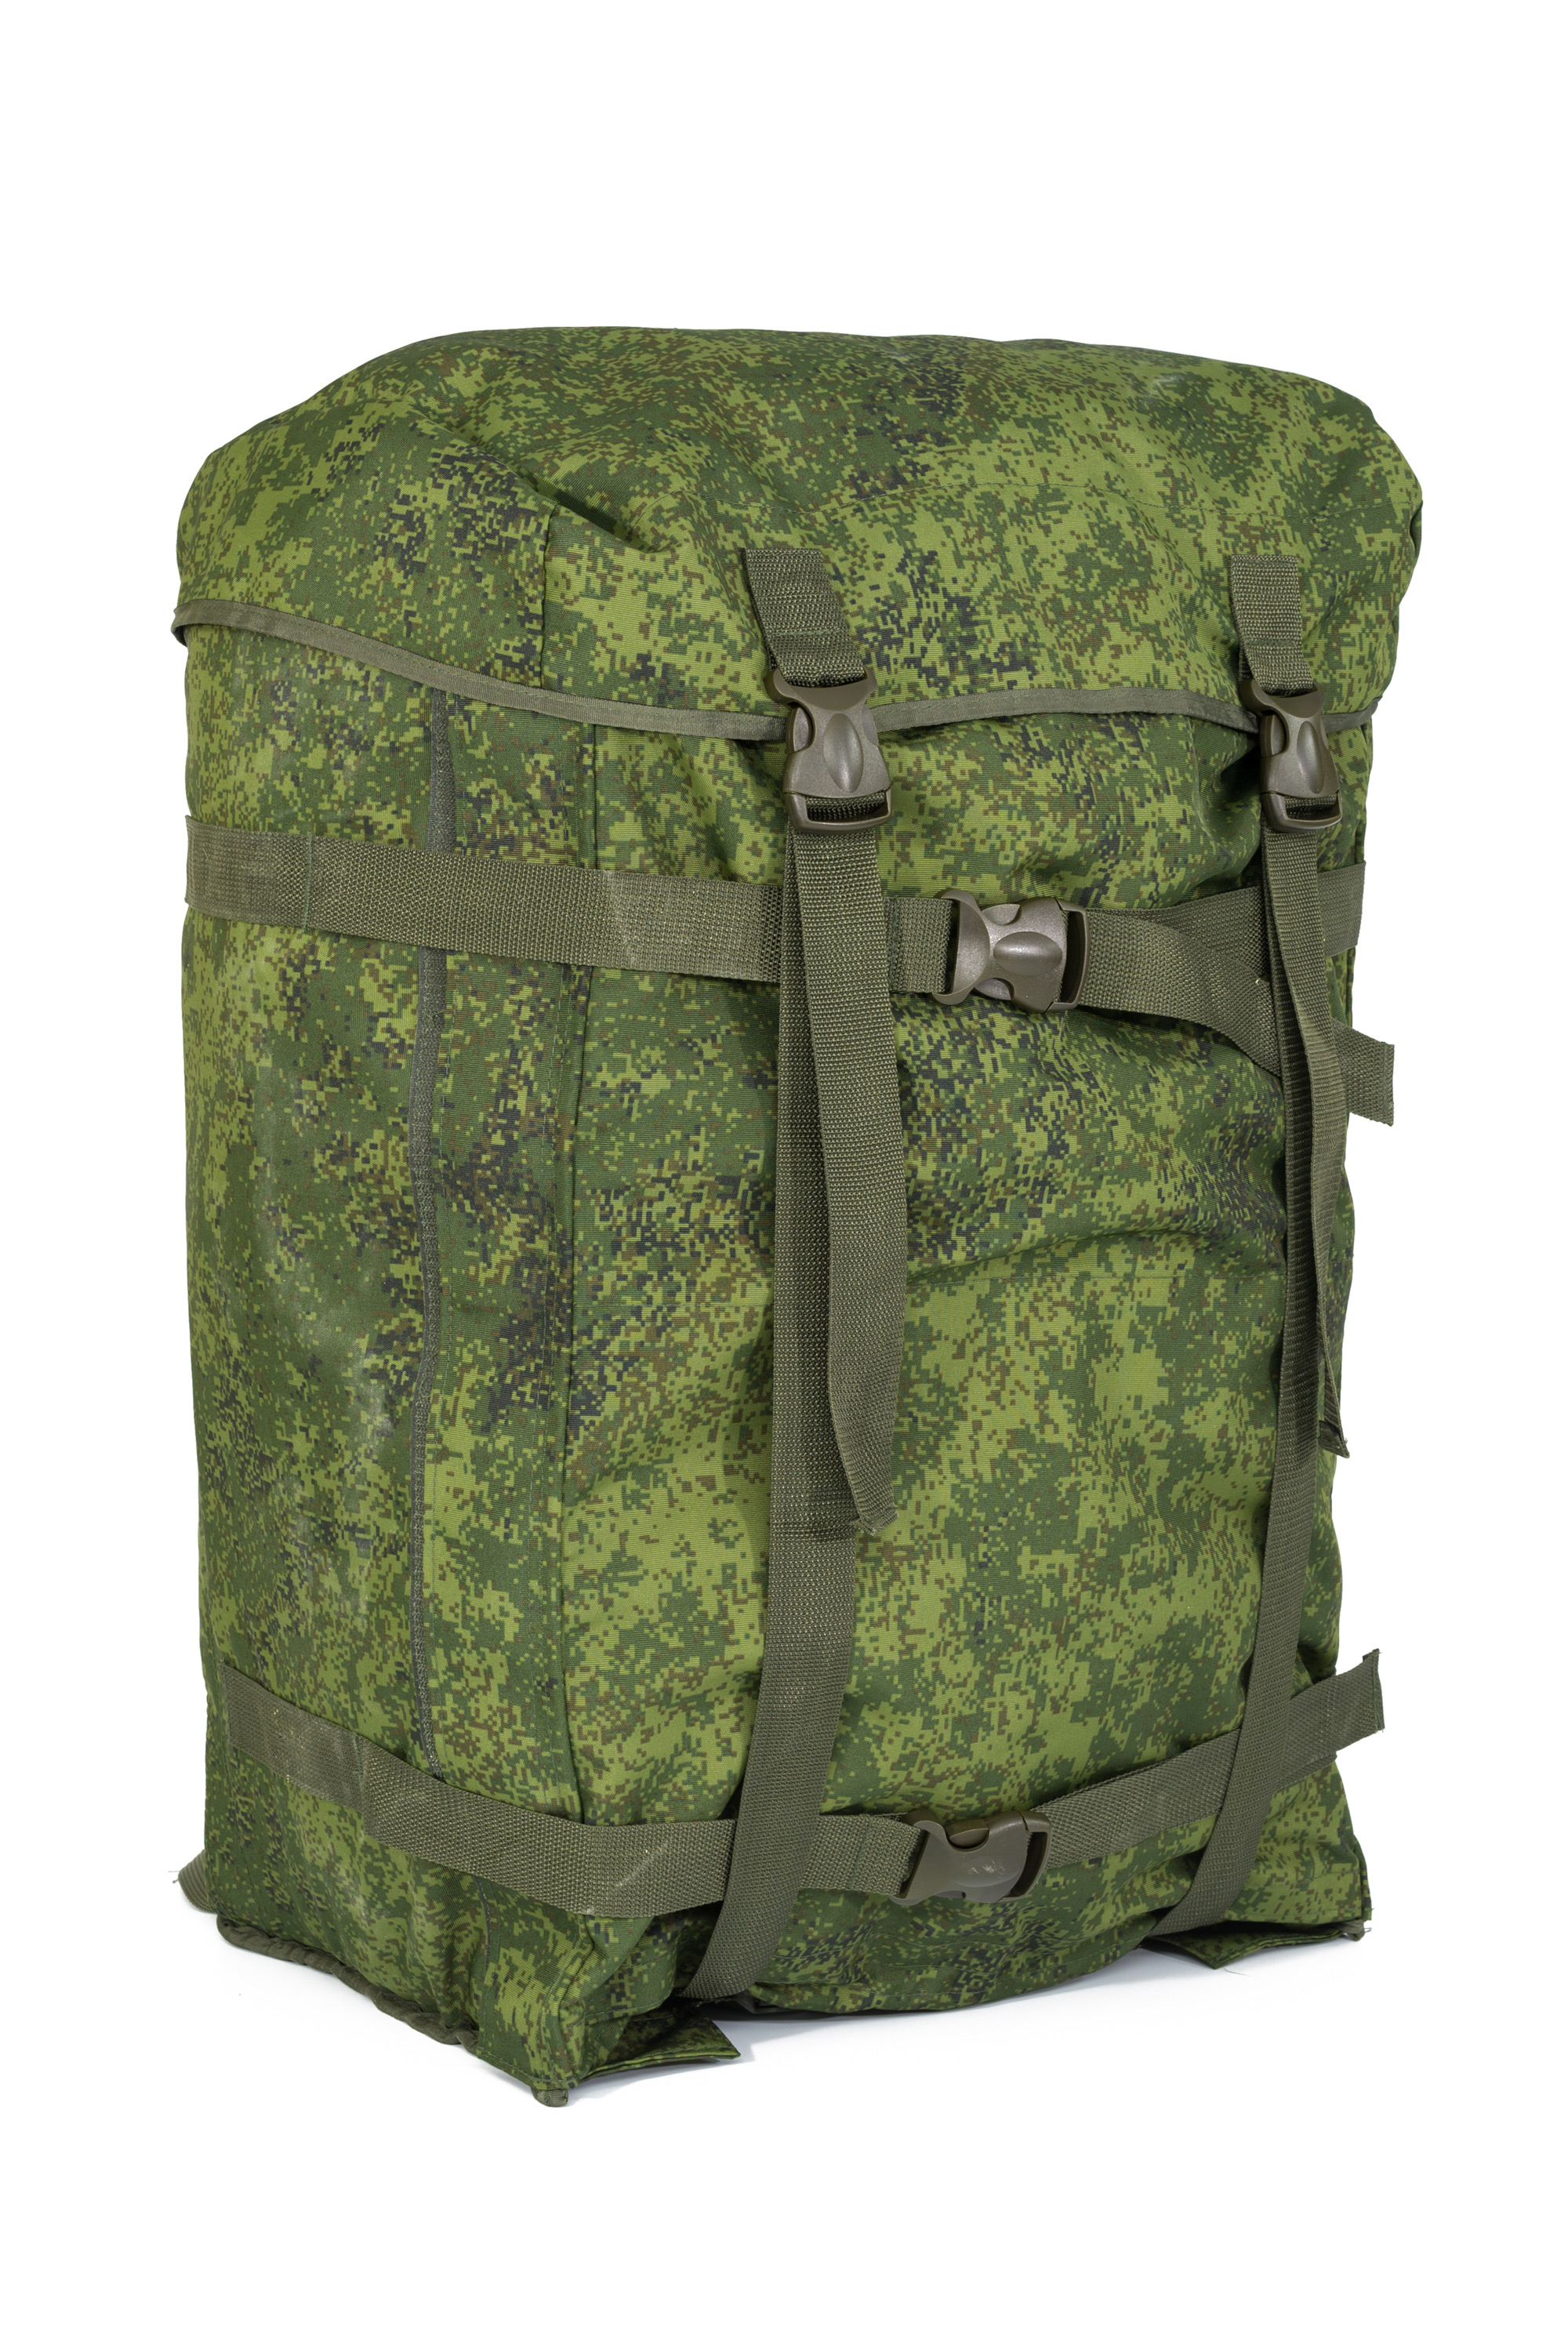 УМБ рюкзак, Переносная учебная материальная база предназначена для проведения занятий по боевой подготовке, военторг, пошив на заказ, Сумка оптом, спб